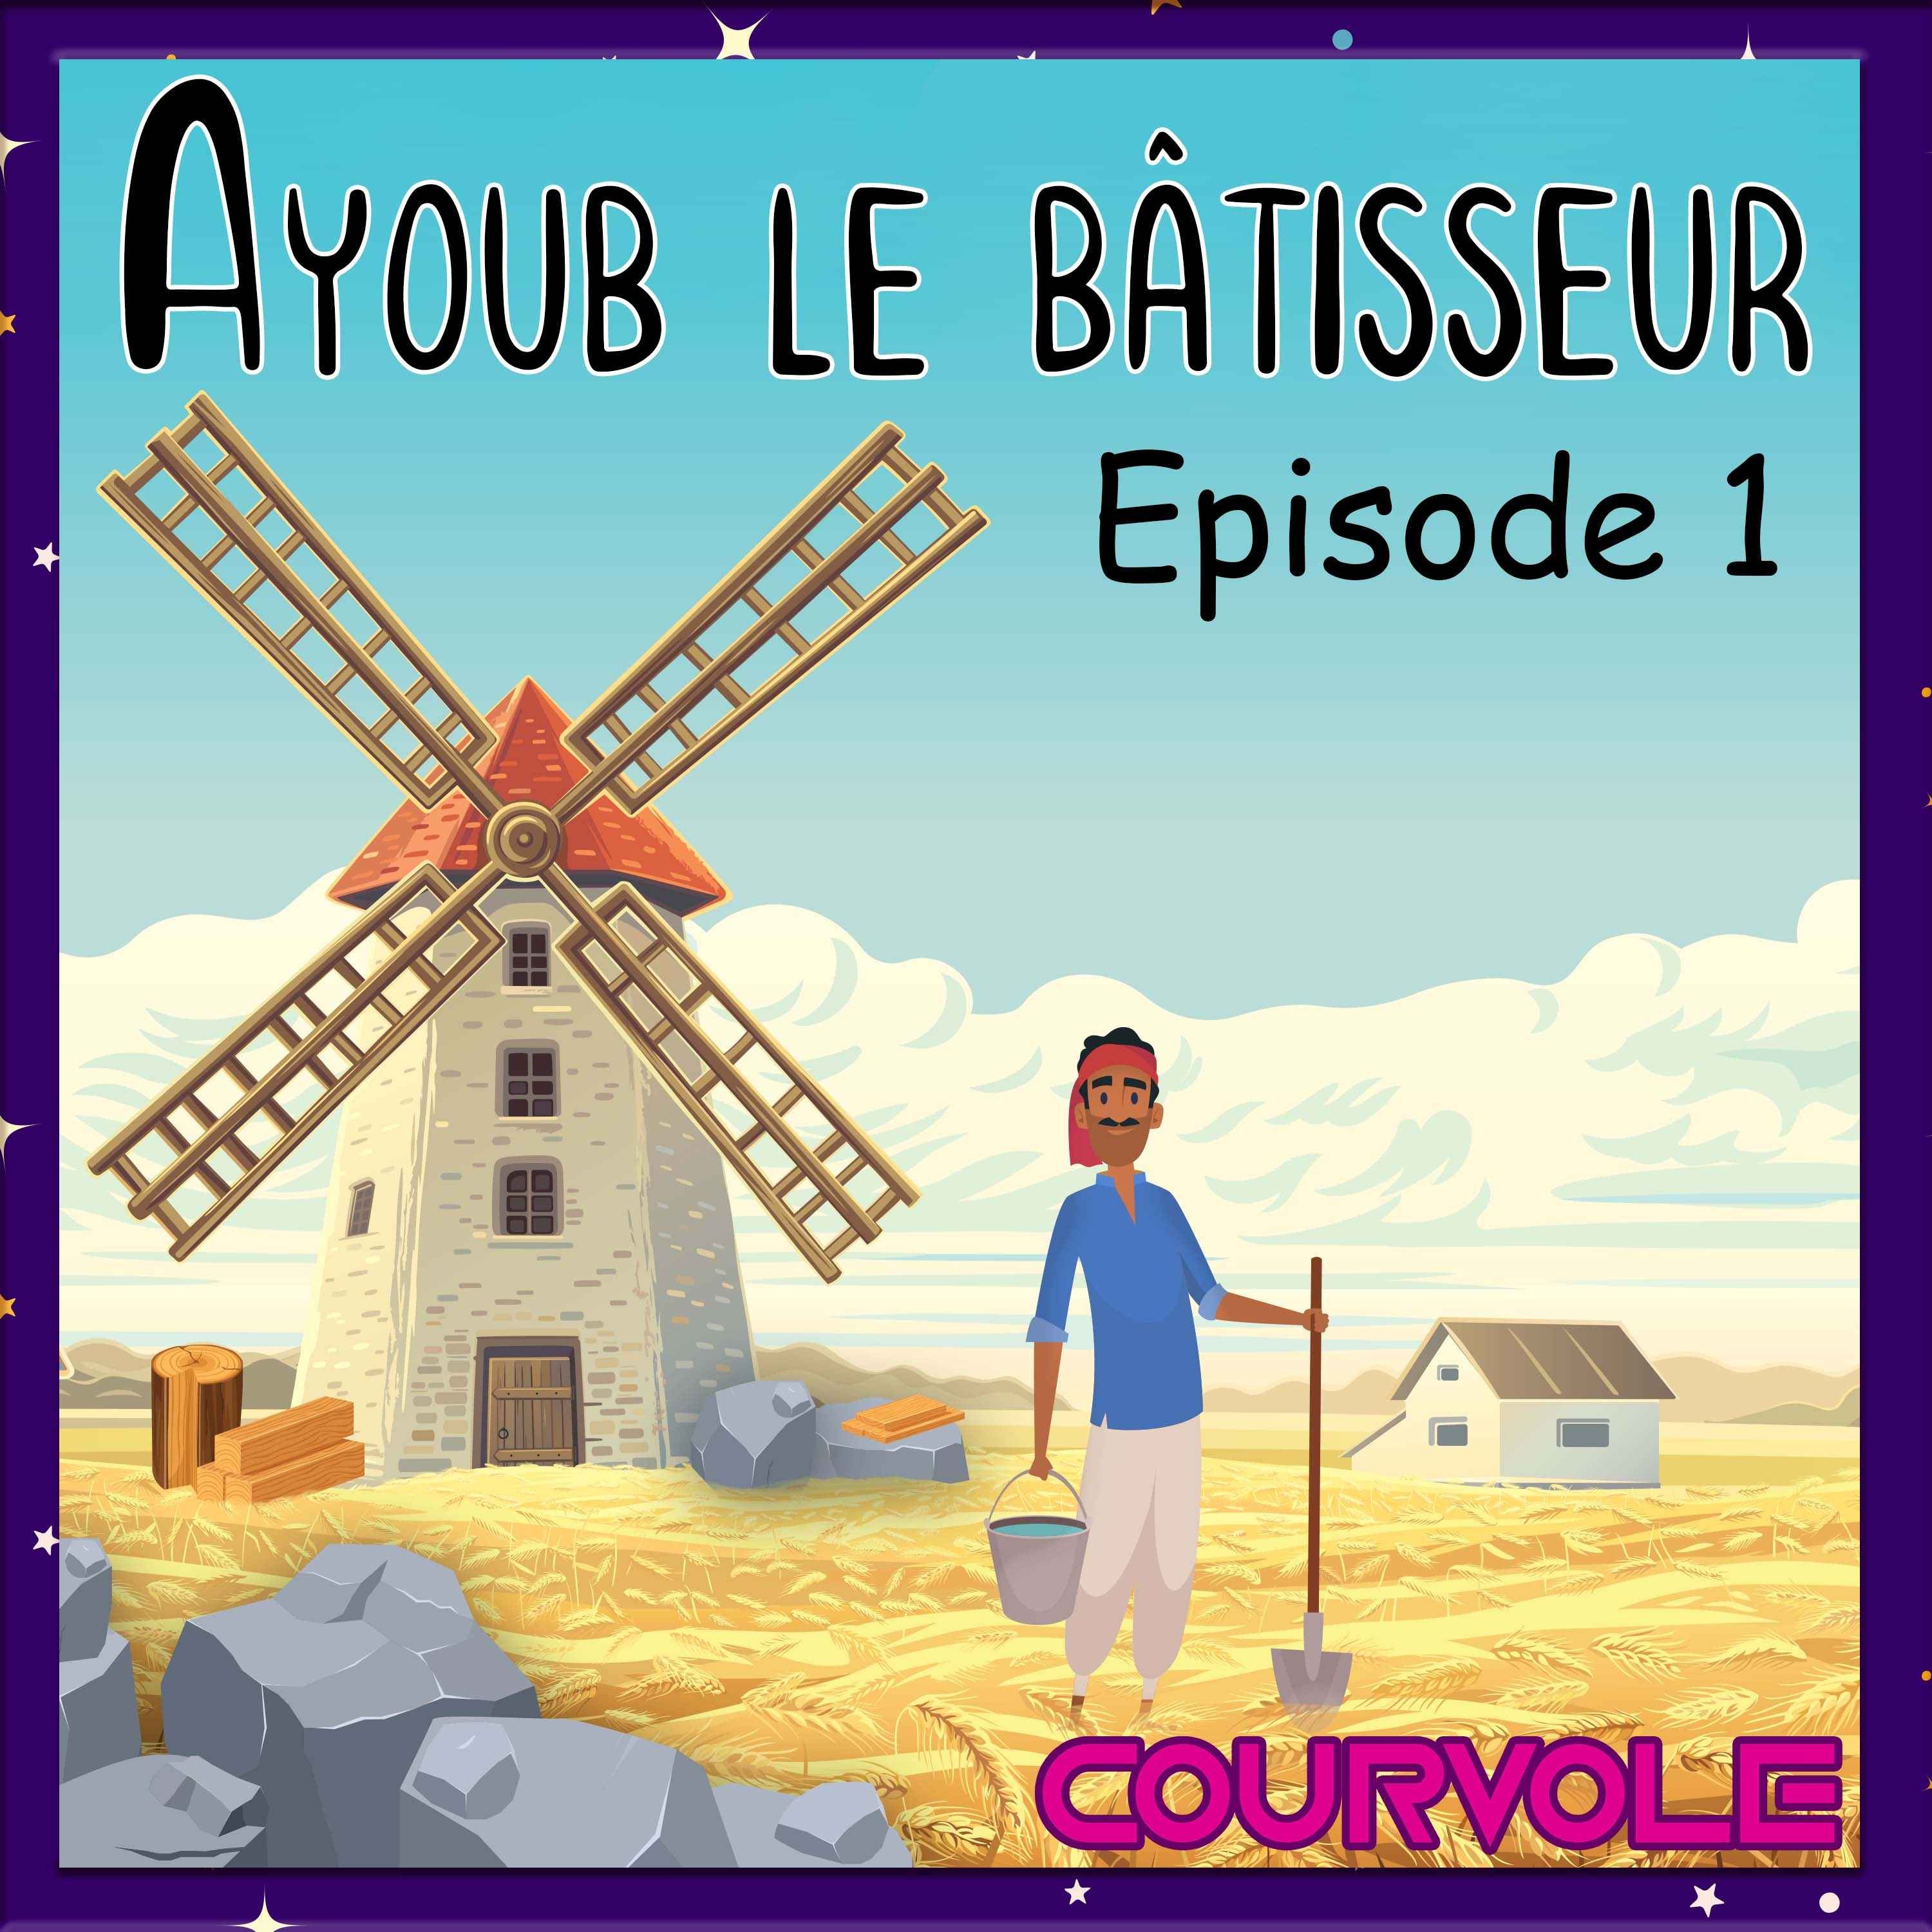 Ayoub le bâtisseur - Episode 1 Image